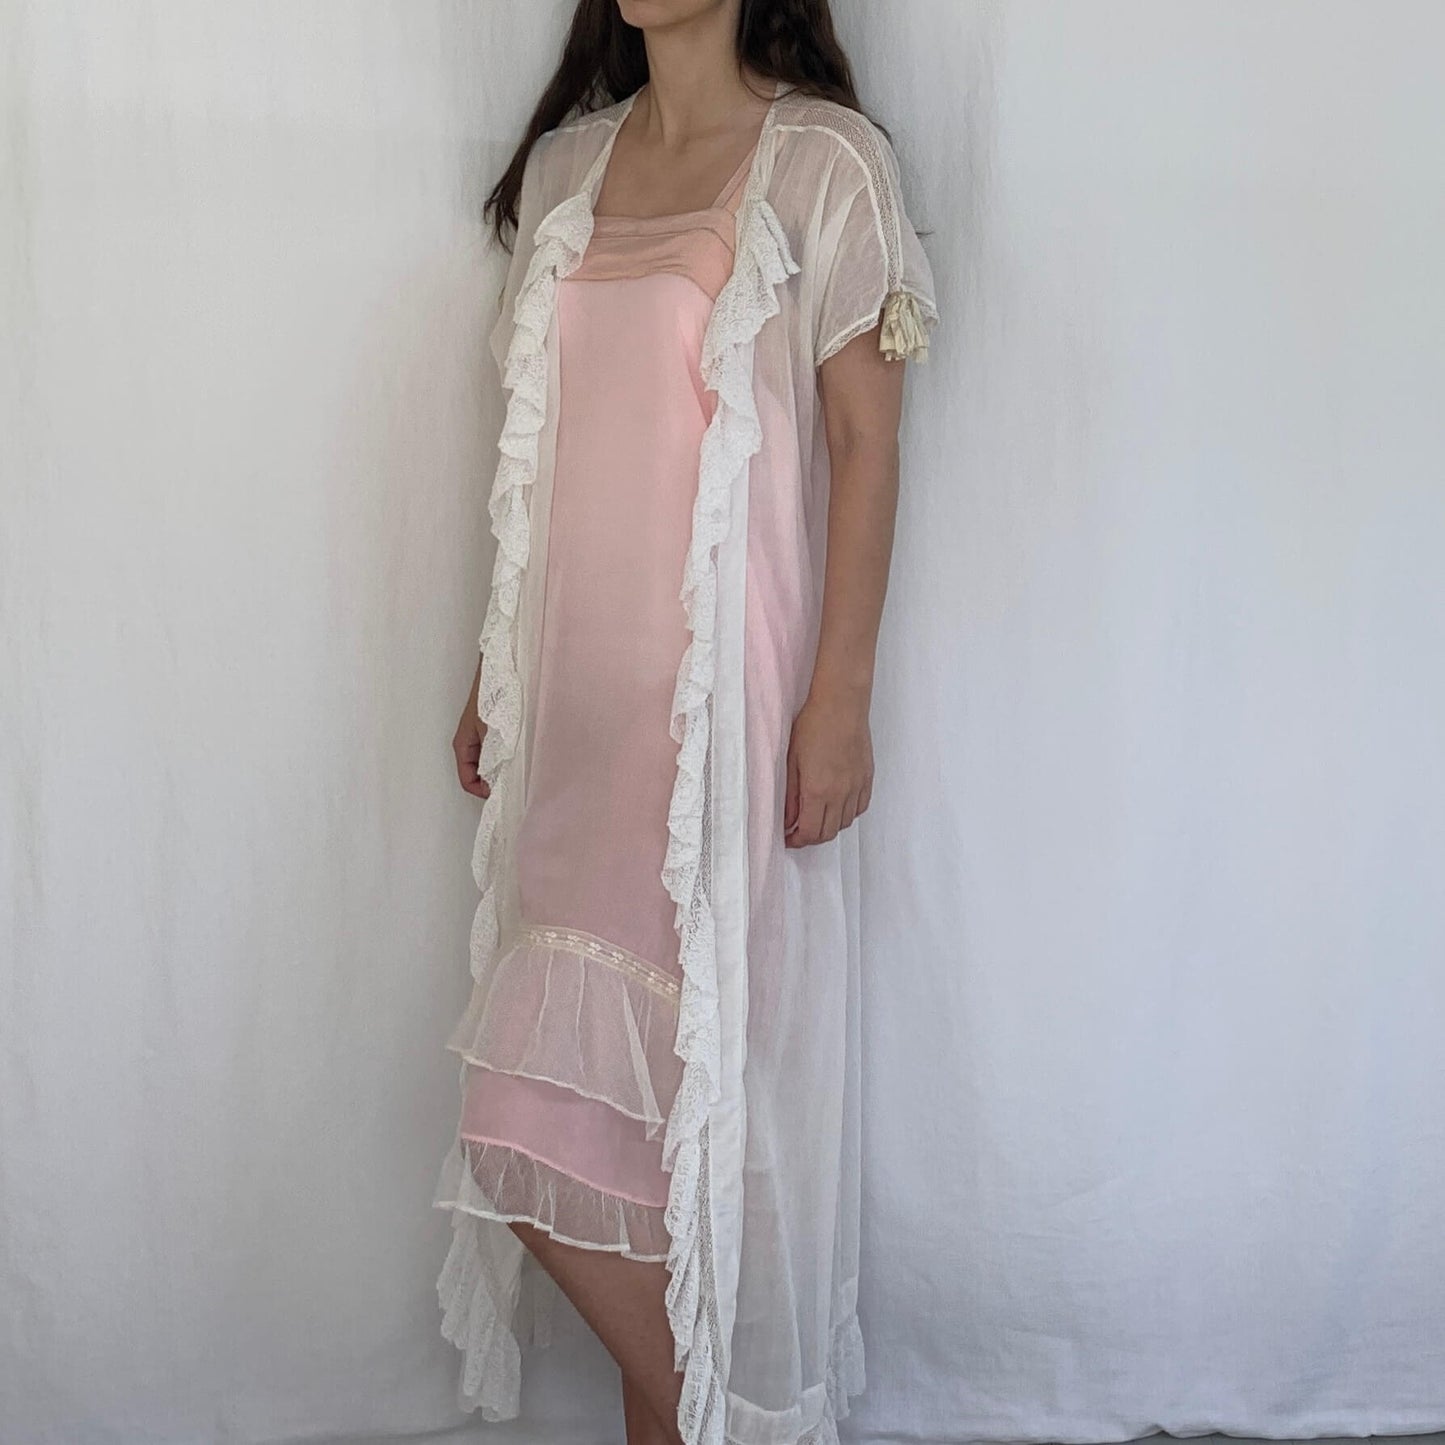 sheer white cotton edwardian nightgown on model wearing pink dress